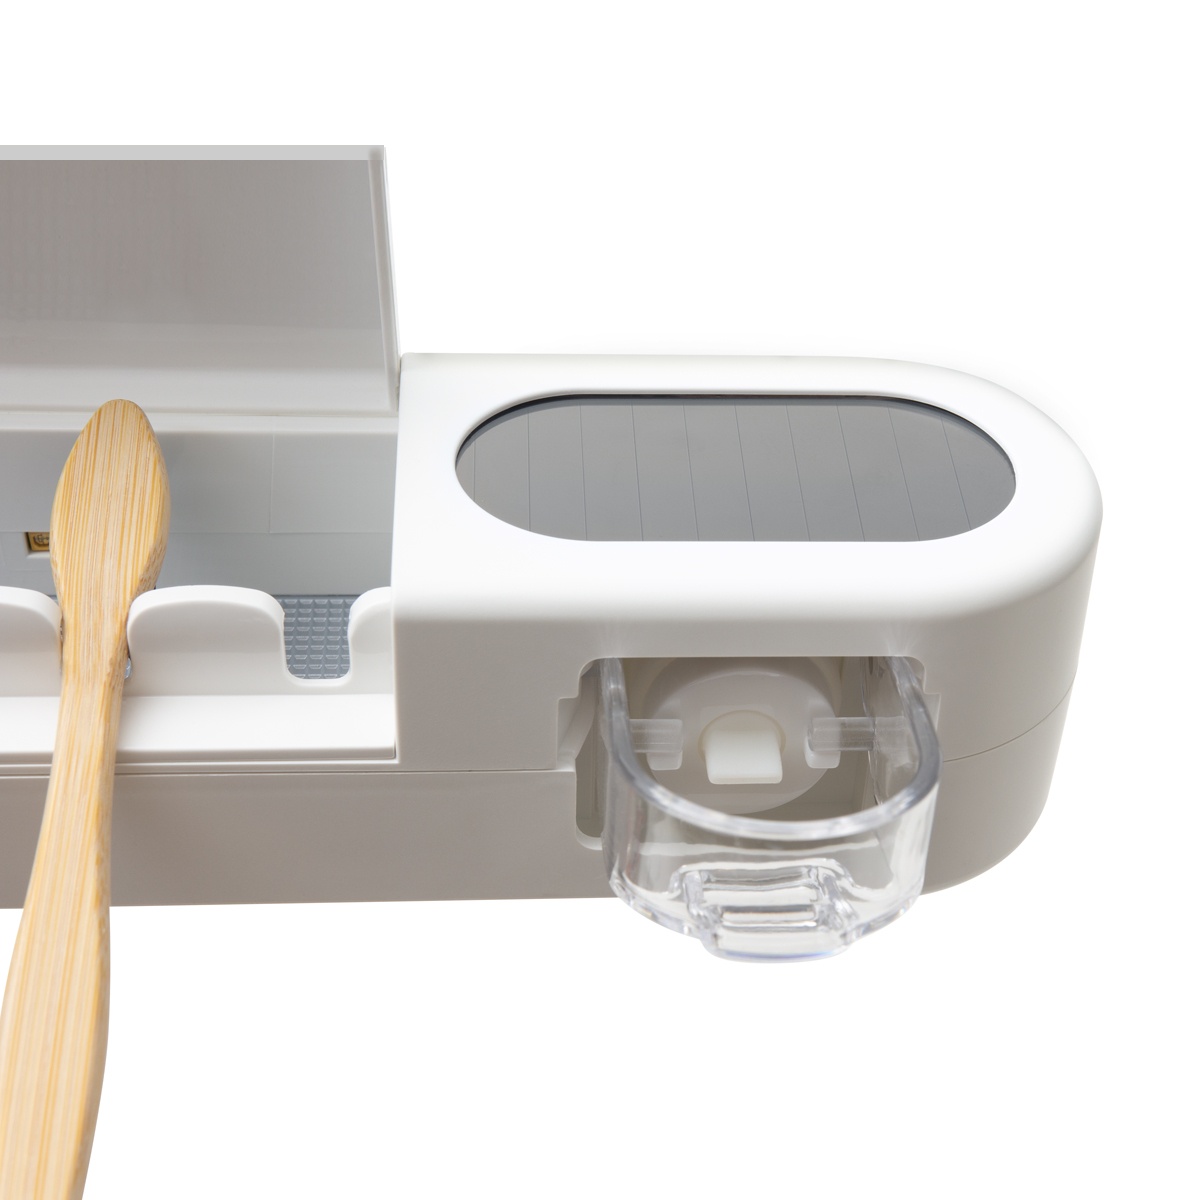 Органайзер для зубных щеток и пасты со стерилизатором MVM USB-порт округлый пластиковый белый BP-36 WHITE